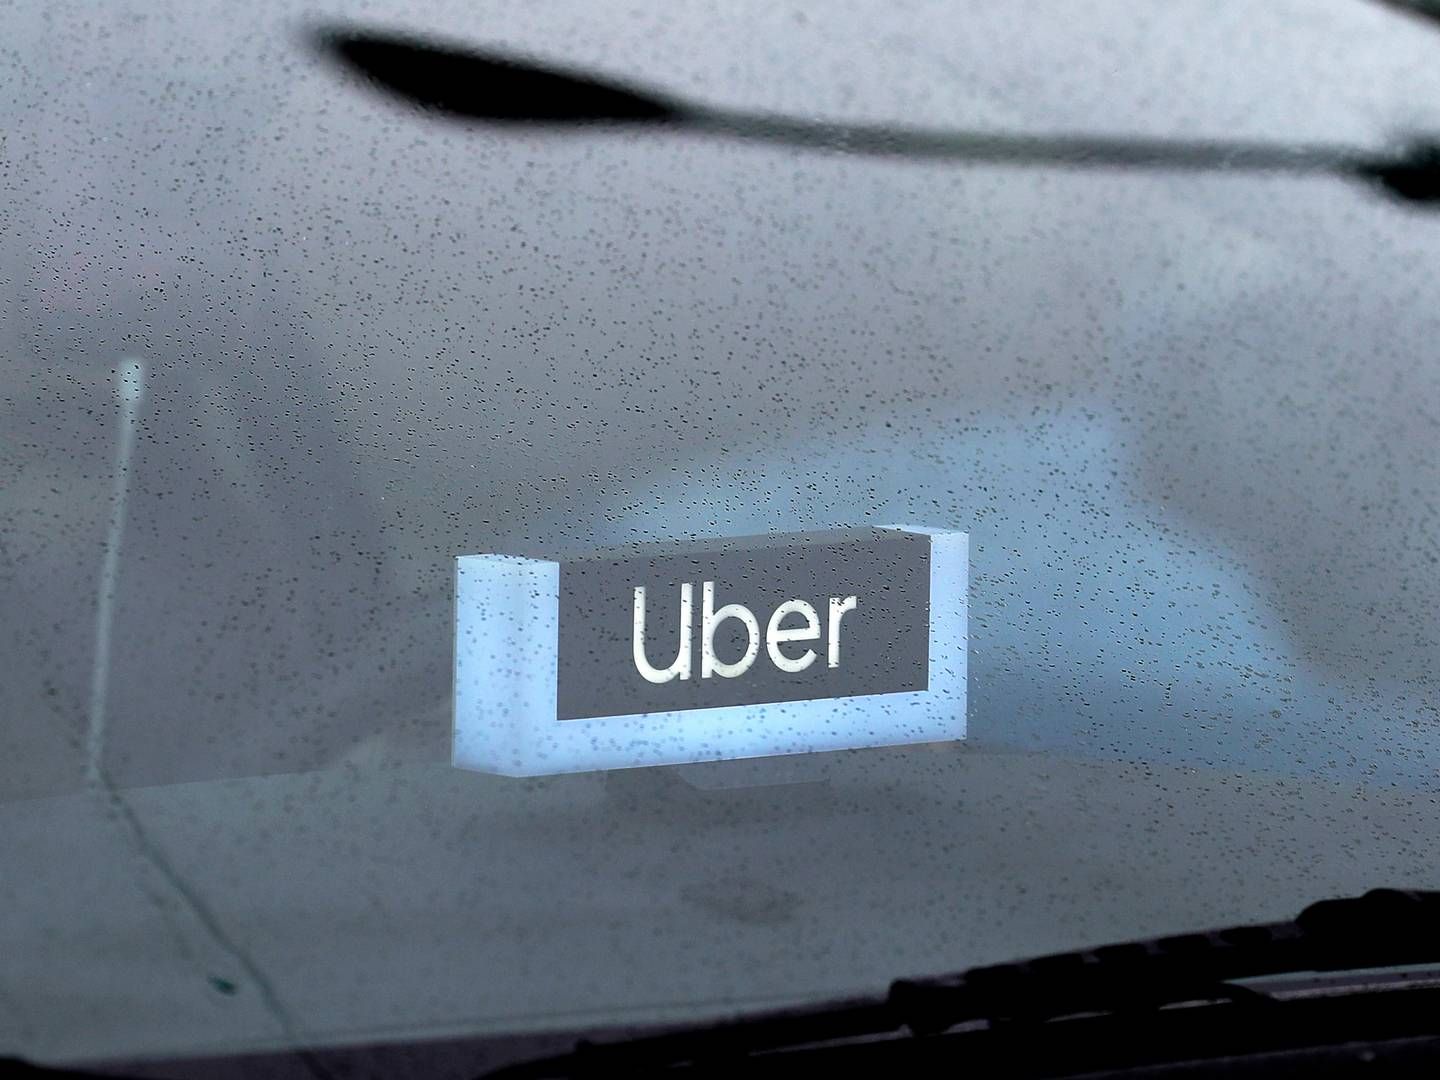 Transportminister Thomas Danielsen (V) åbnede forleden for, at Venstre vil kigge på, om Uber kan være med til at løse problemer i den kollektive transport, der specielt i landdistrikterne har det svært. | Foto: Nam Y. Huh/AP/Ritzau Scanpix